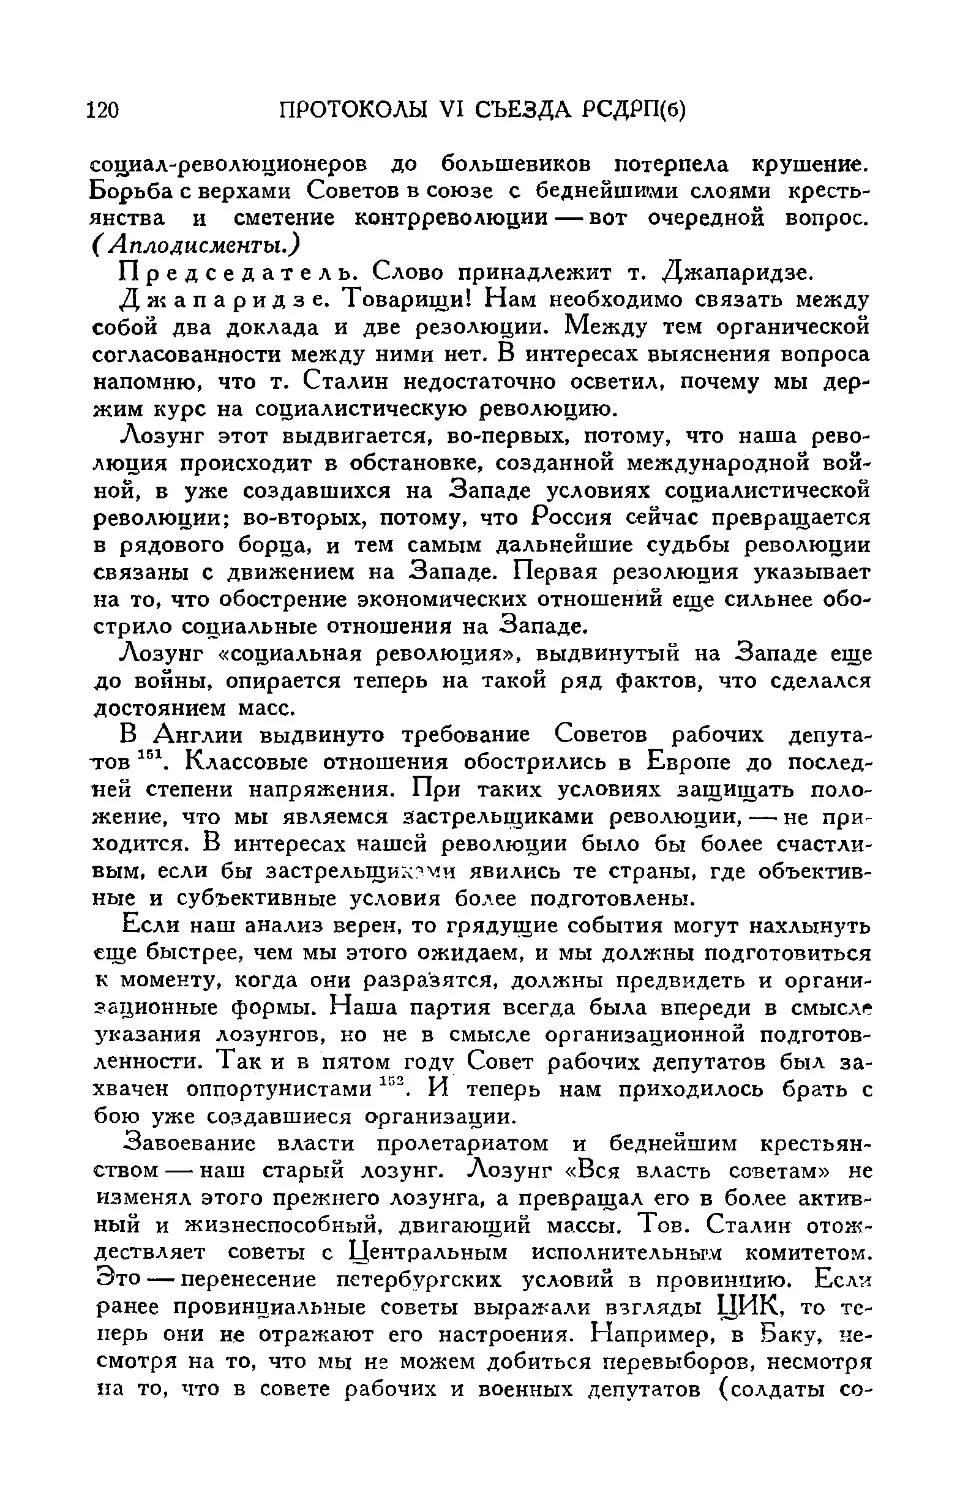 Продолжение прений по докладу т. Сталина
Речь т. Джапаридзе